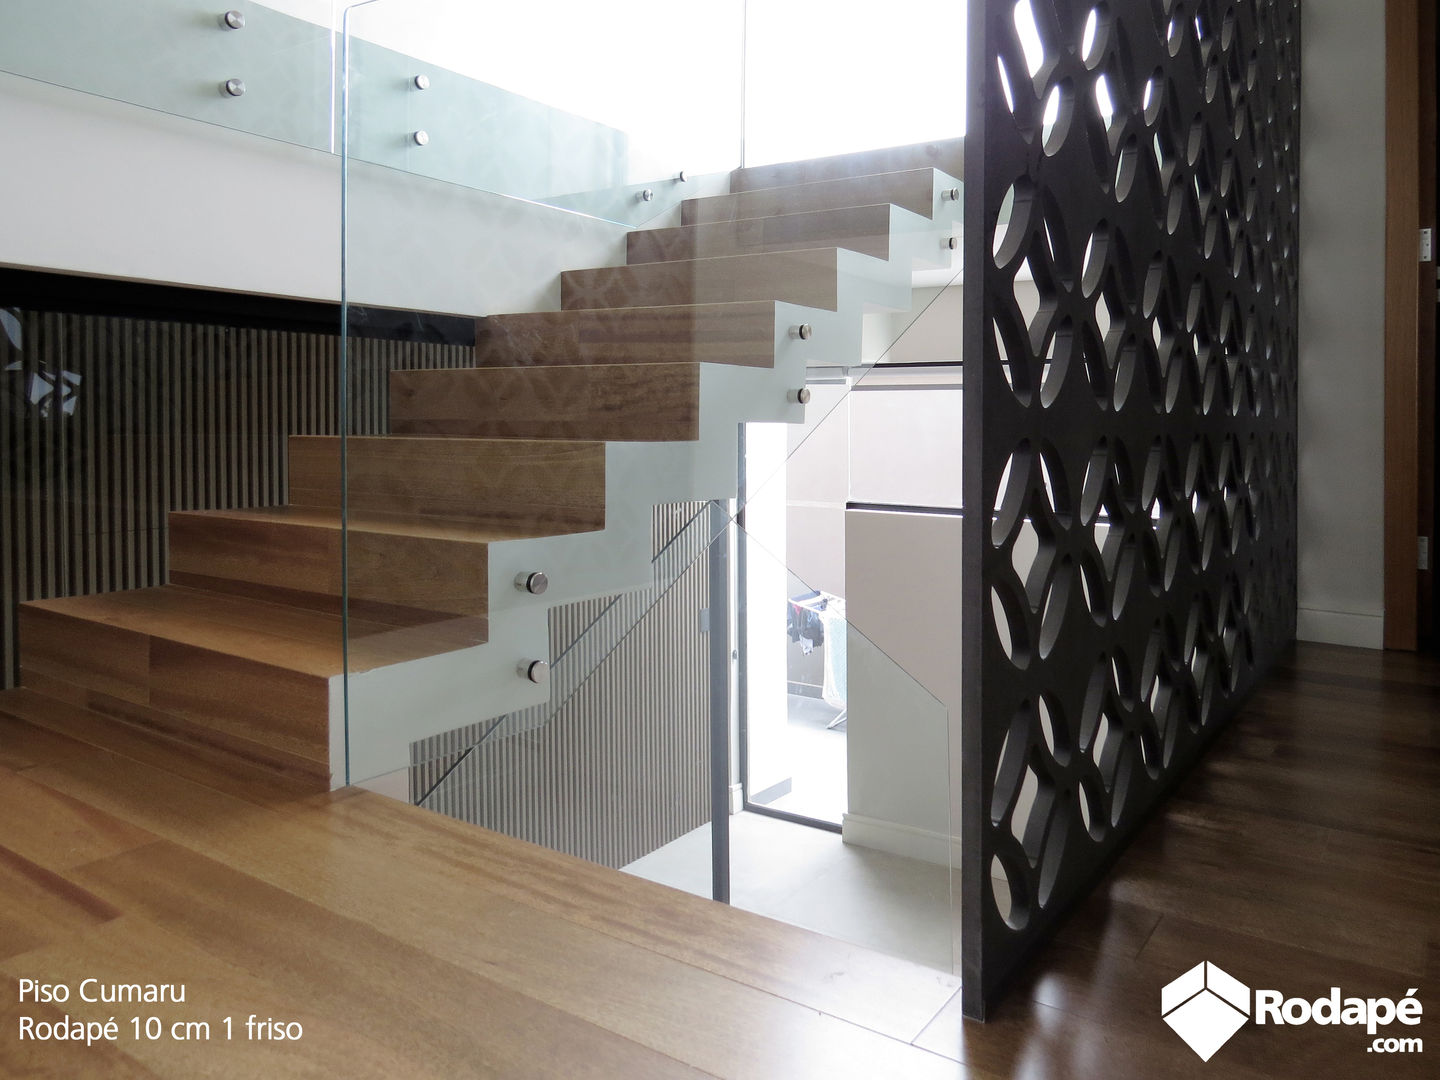 Escada e área íntima com nosso piso de madeira Quaruba, Rodapé.com Rodapé.com Stairs Wood Wood effect